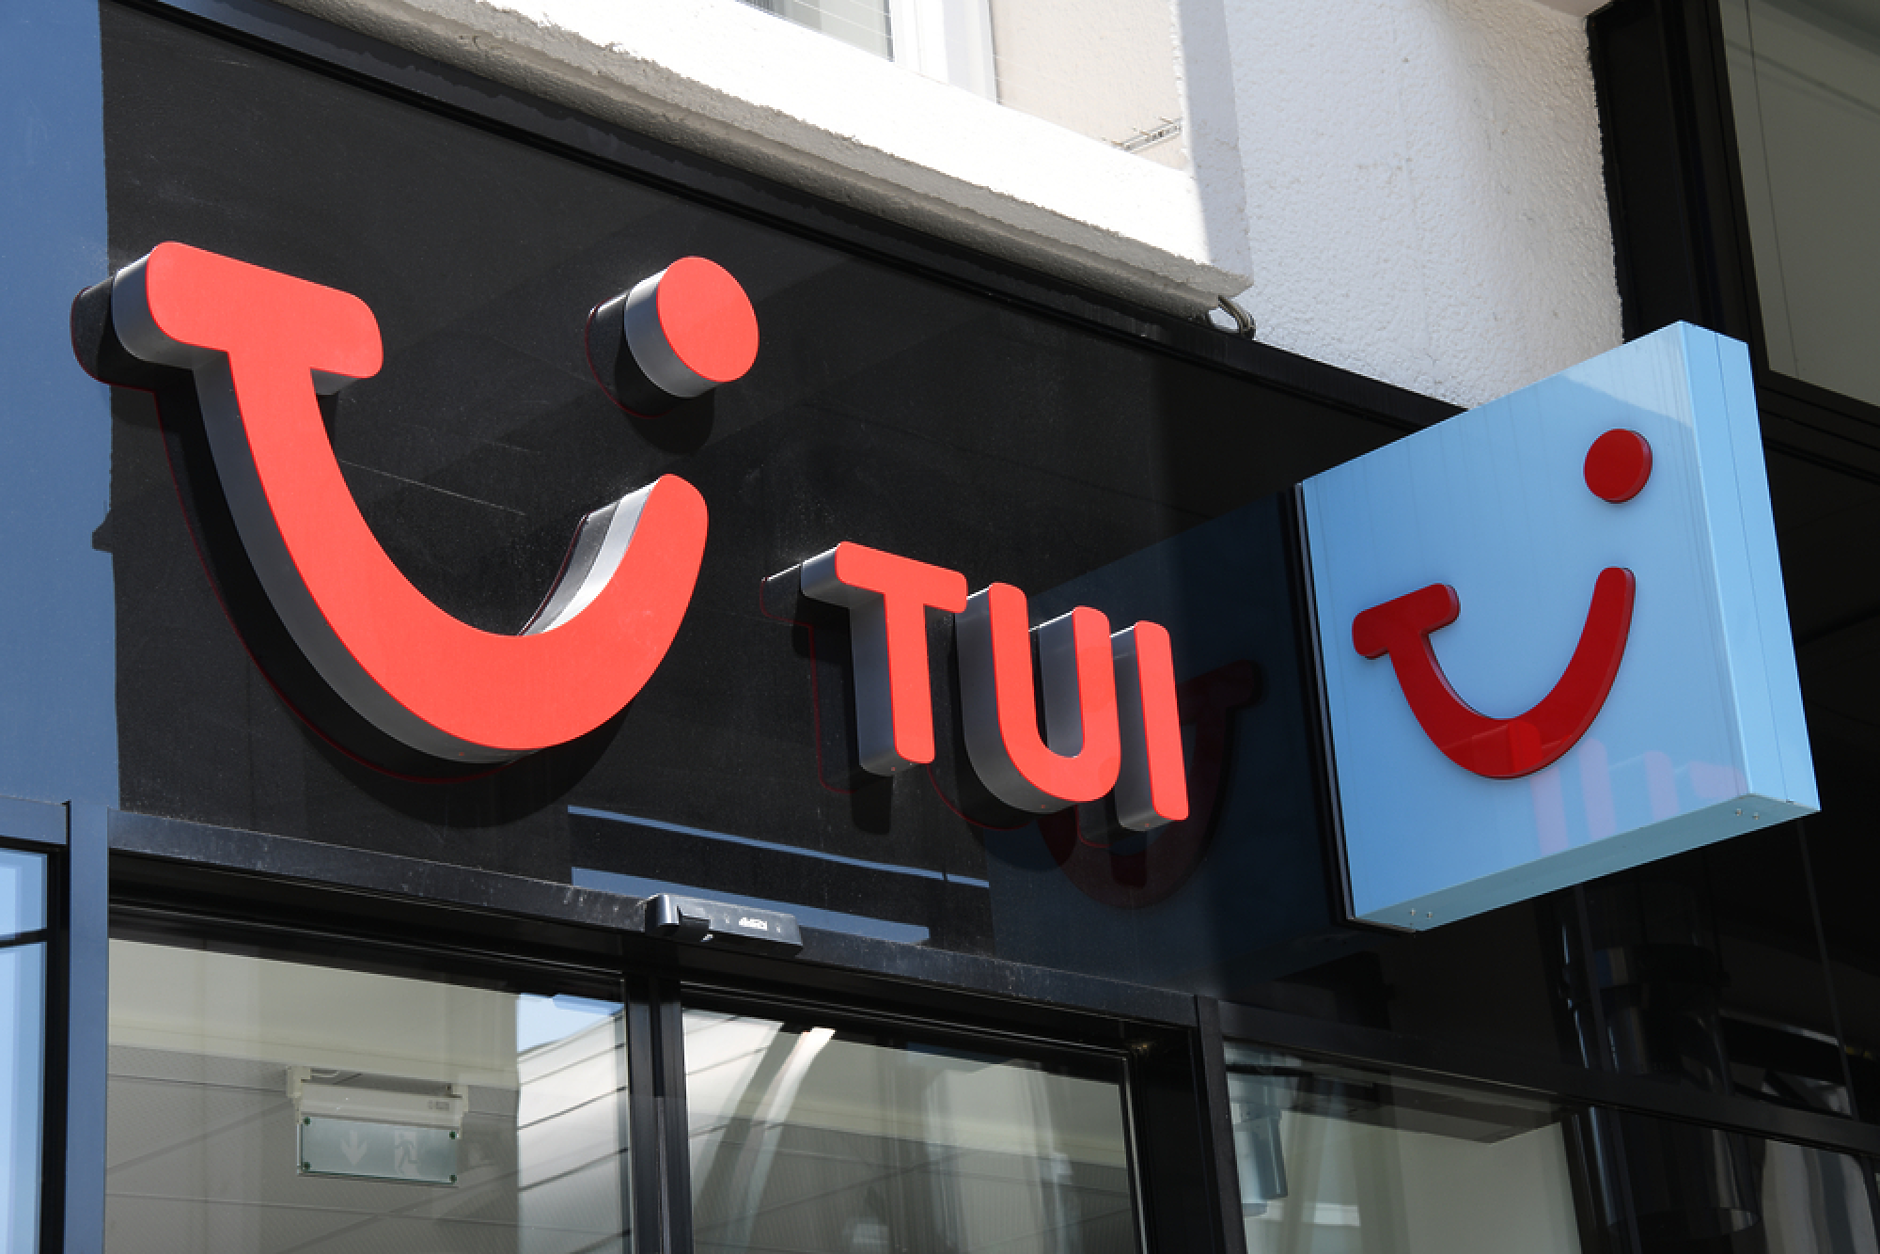 TUI се надява за добро търсене за предстоящия летен сезон въпреки по-високите цени